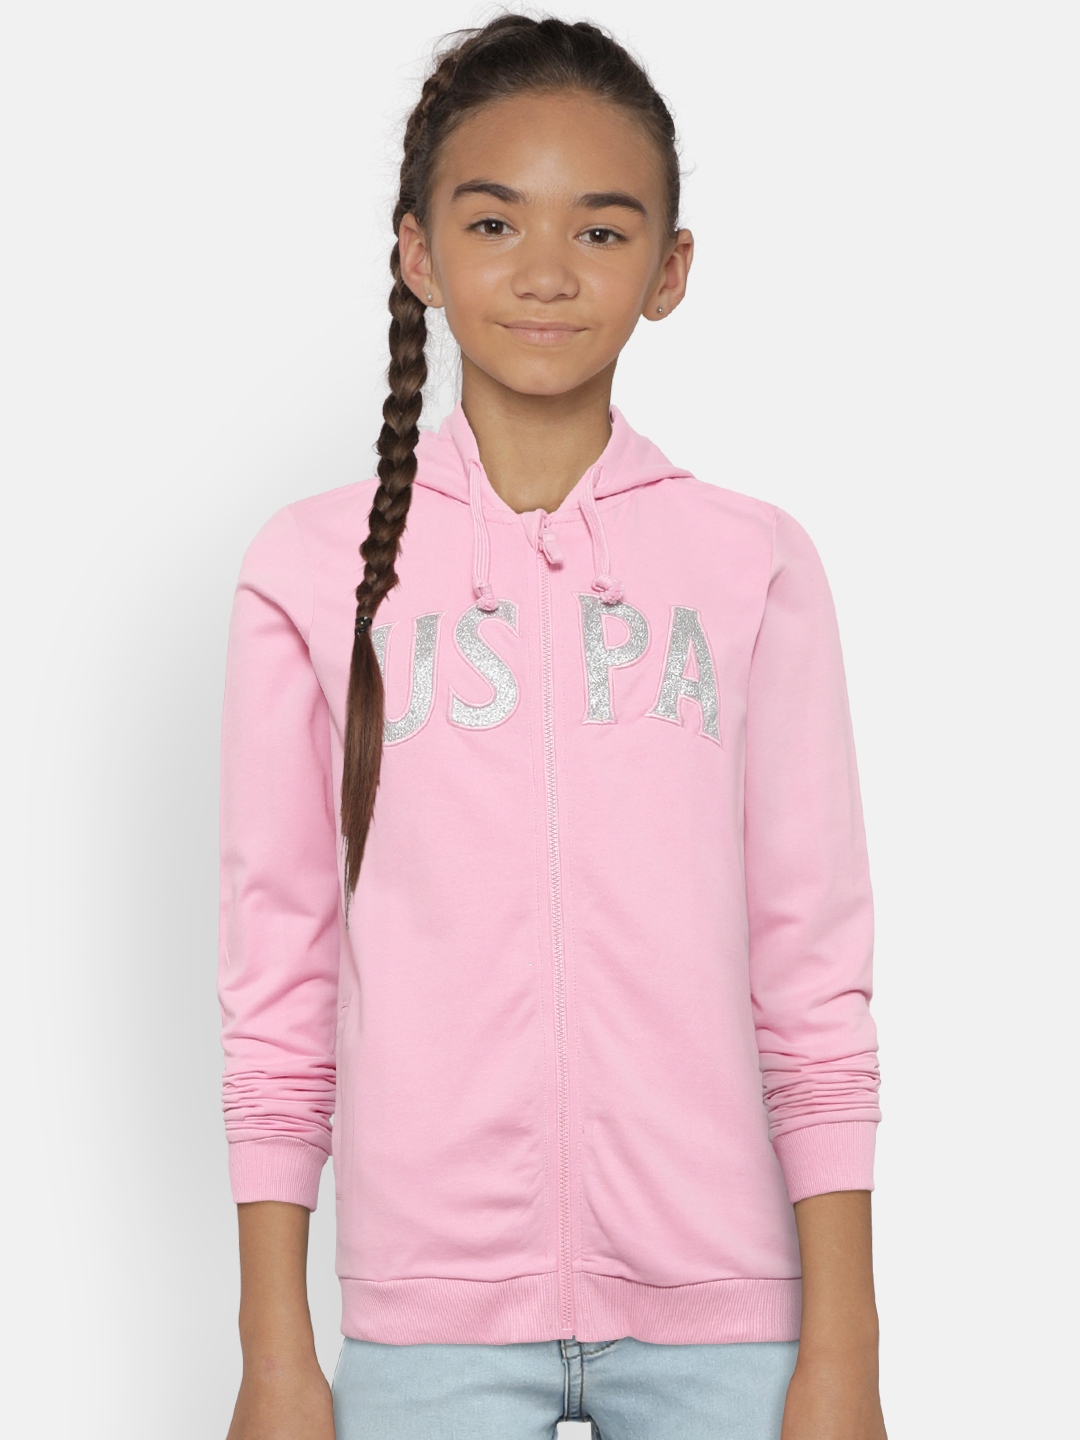 U.S. Polo Assn. Kids Girls Pink Self Design Hooded Sweatshirt